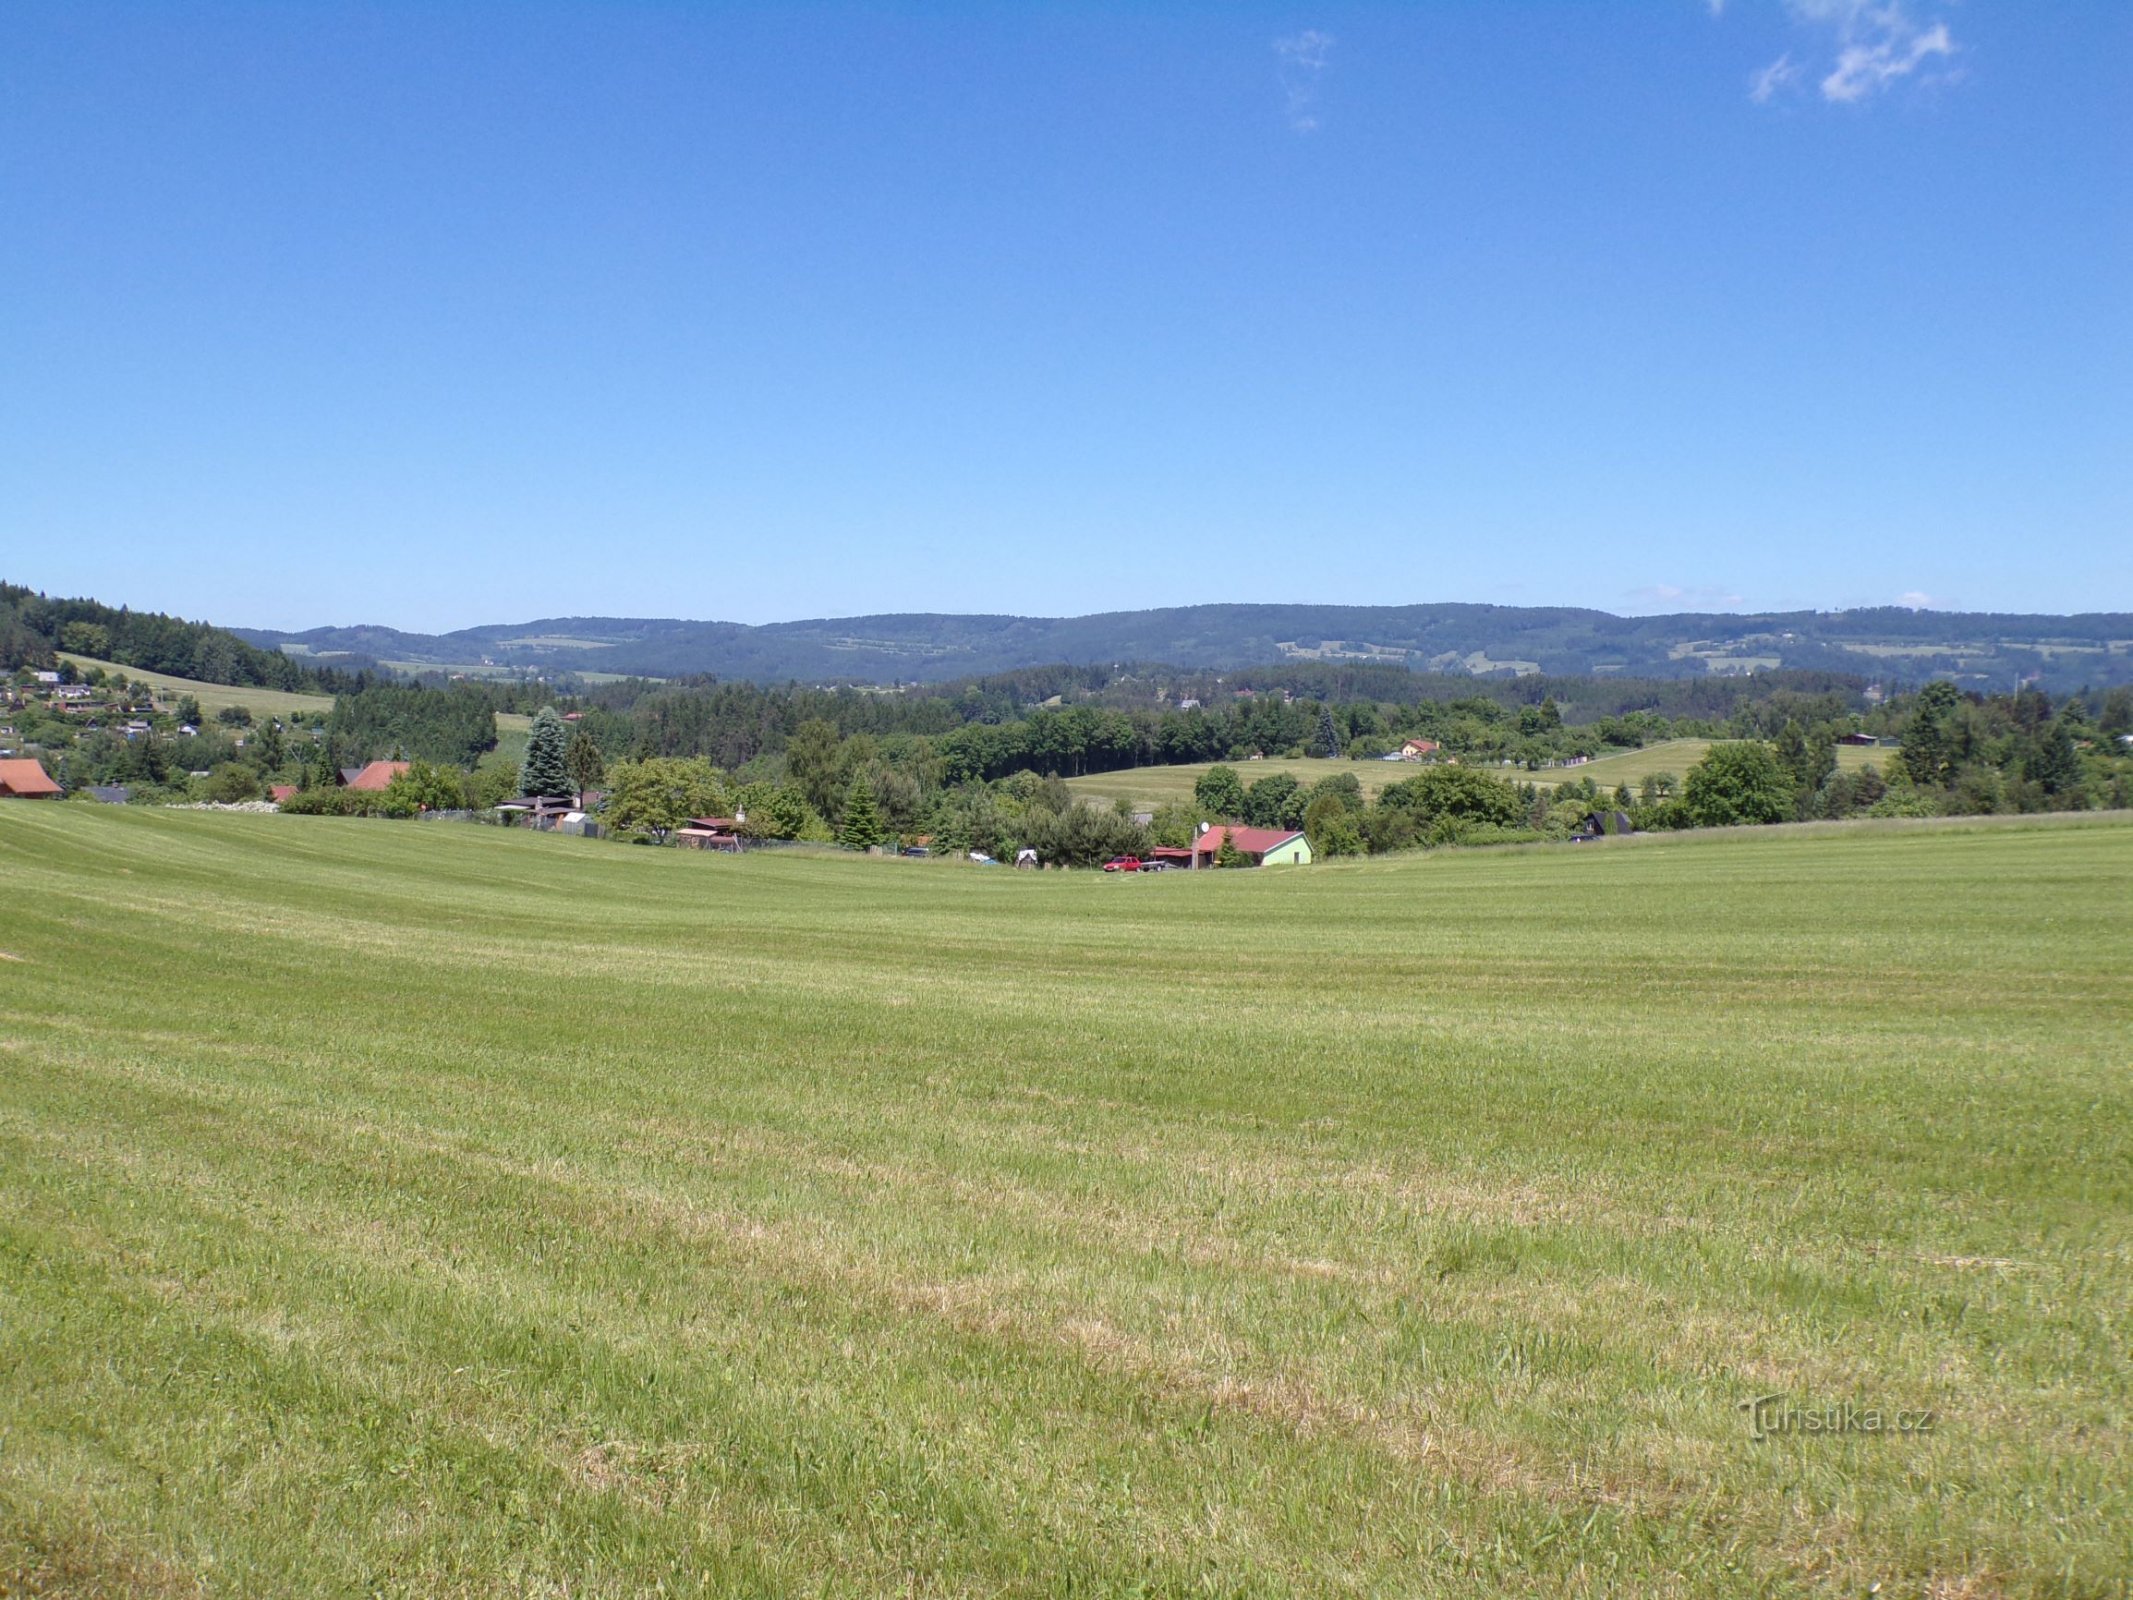 Uitzicht vanaf de locatie Na Samkovský k Lipká (Úpice, 14.6.2021)